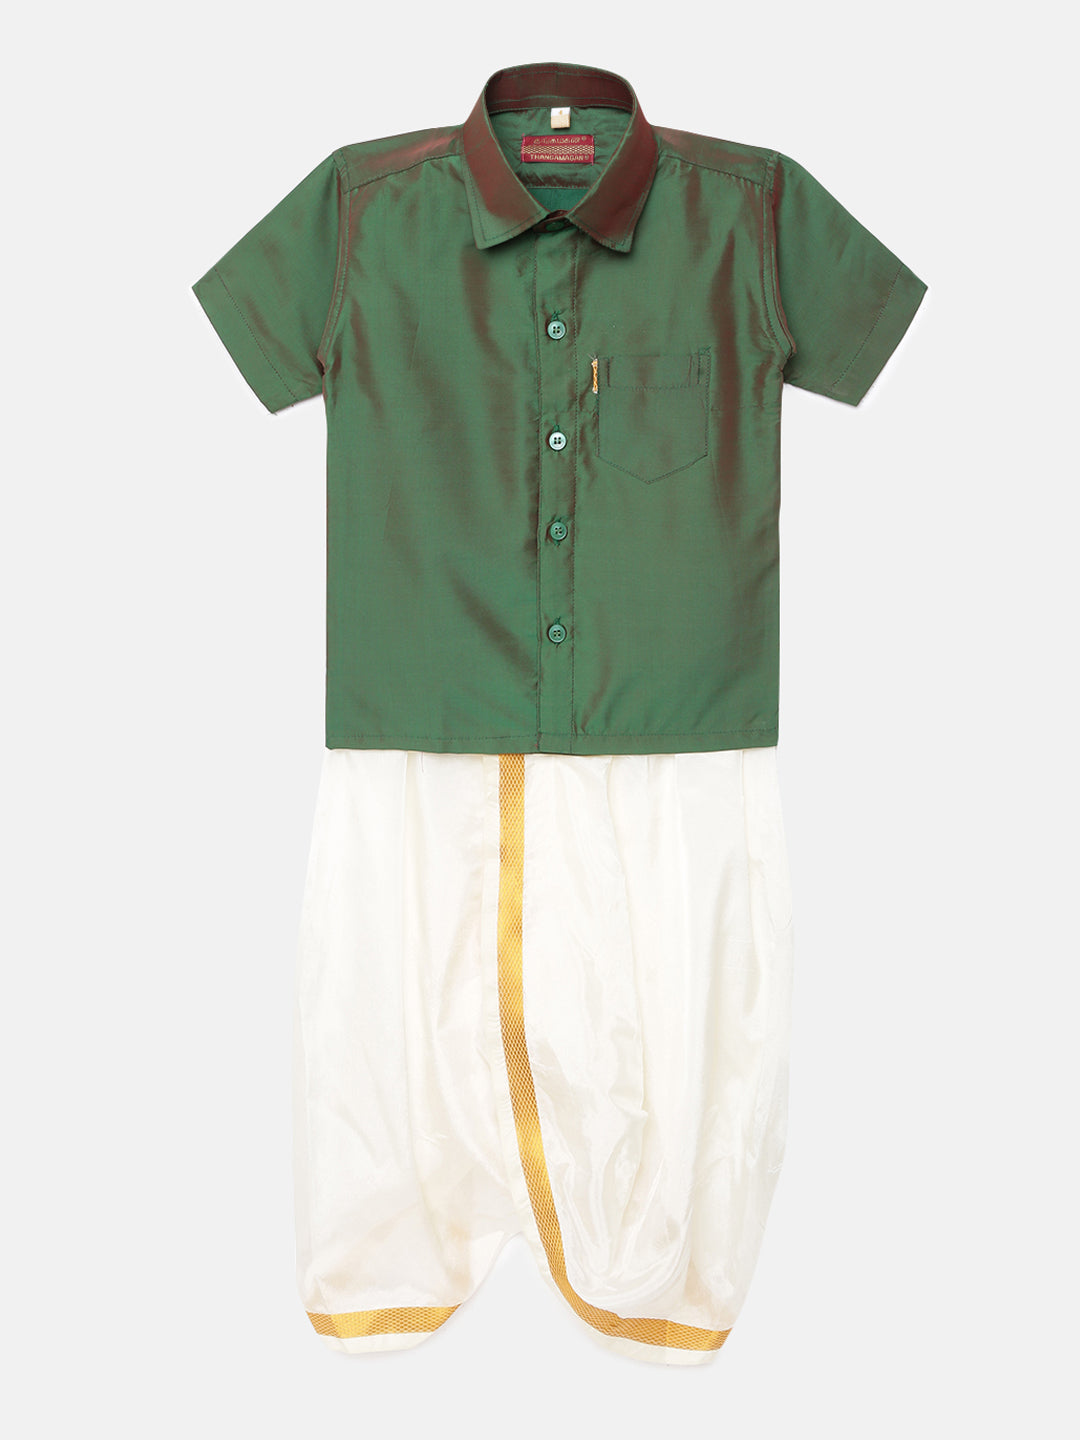 31. Boys Panjagajam & Shirt Set